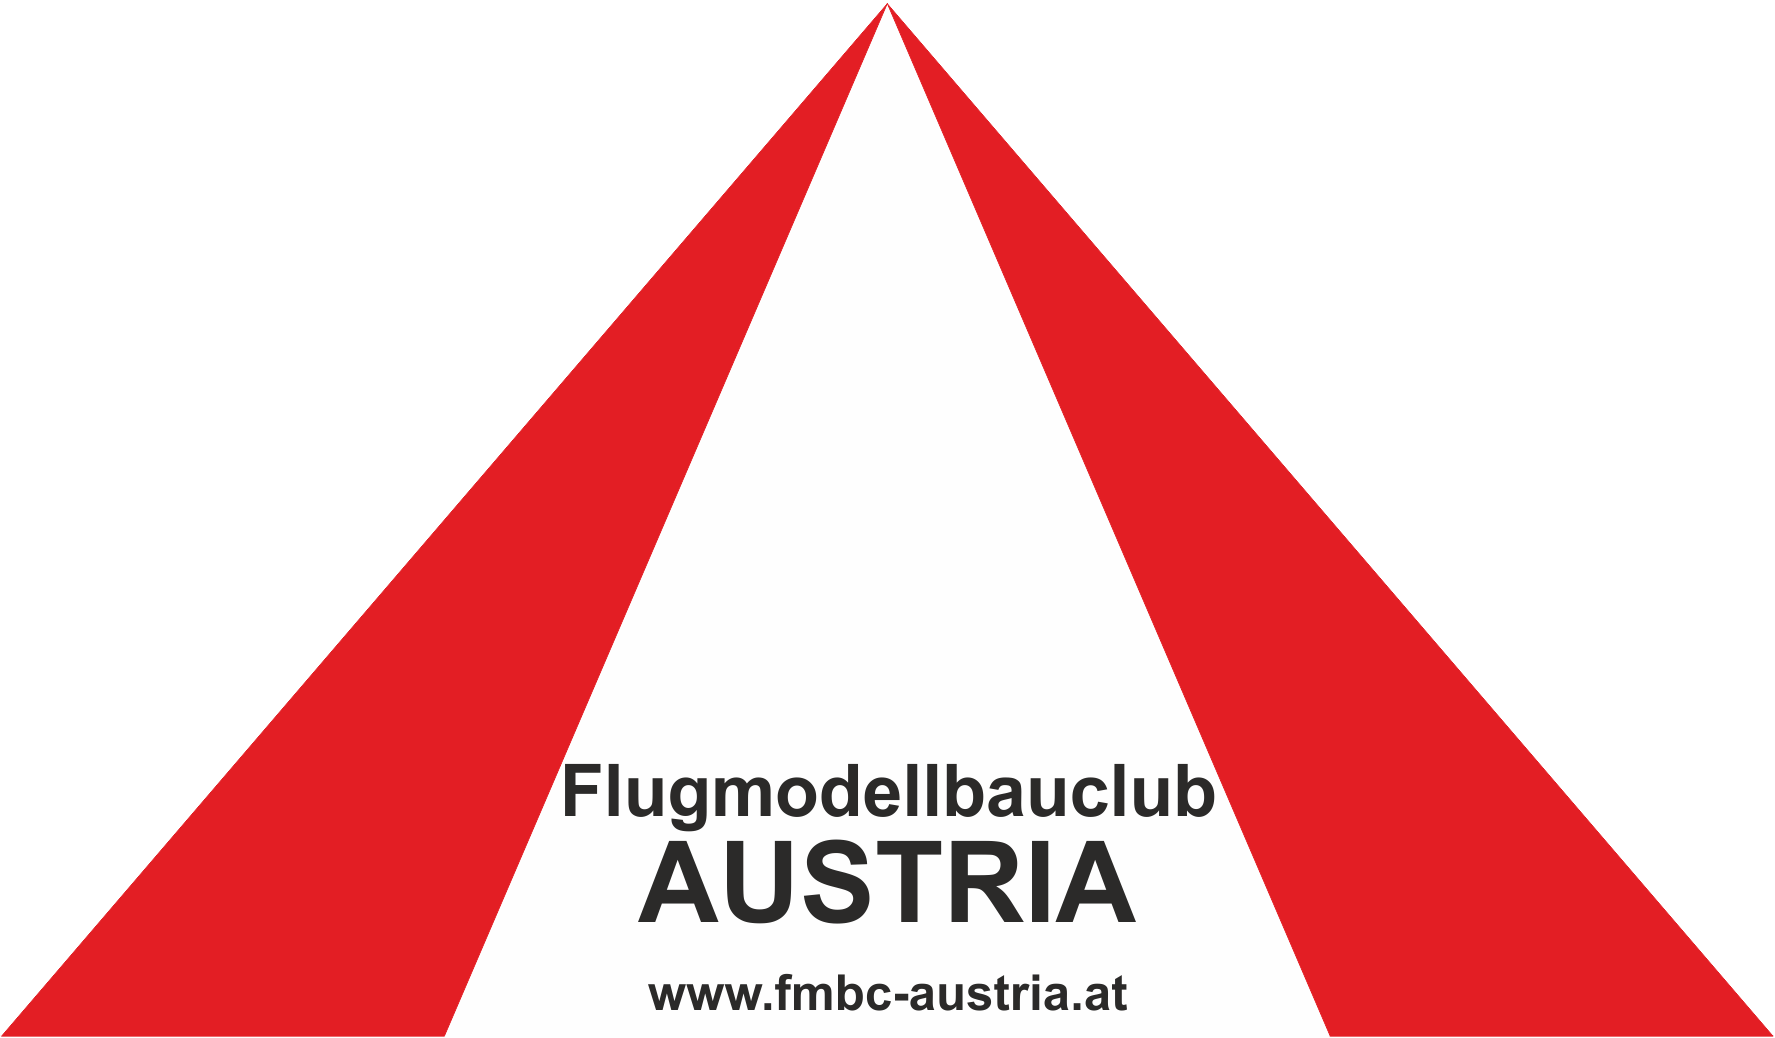 (c) Fmbc-austria.at